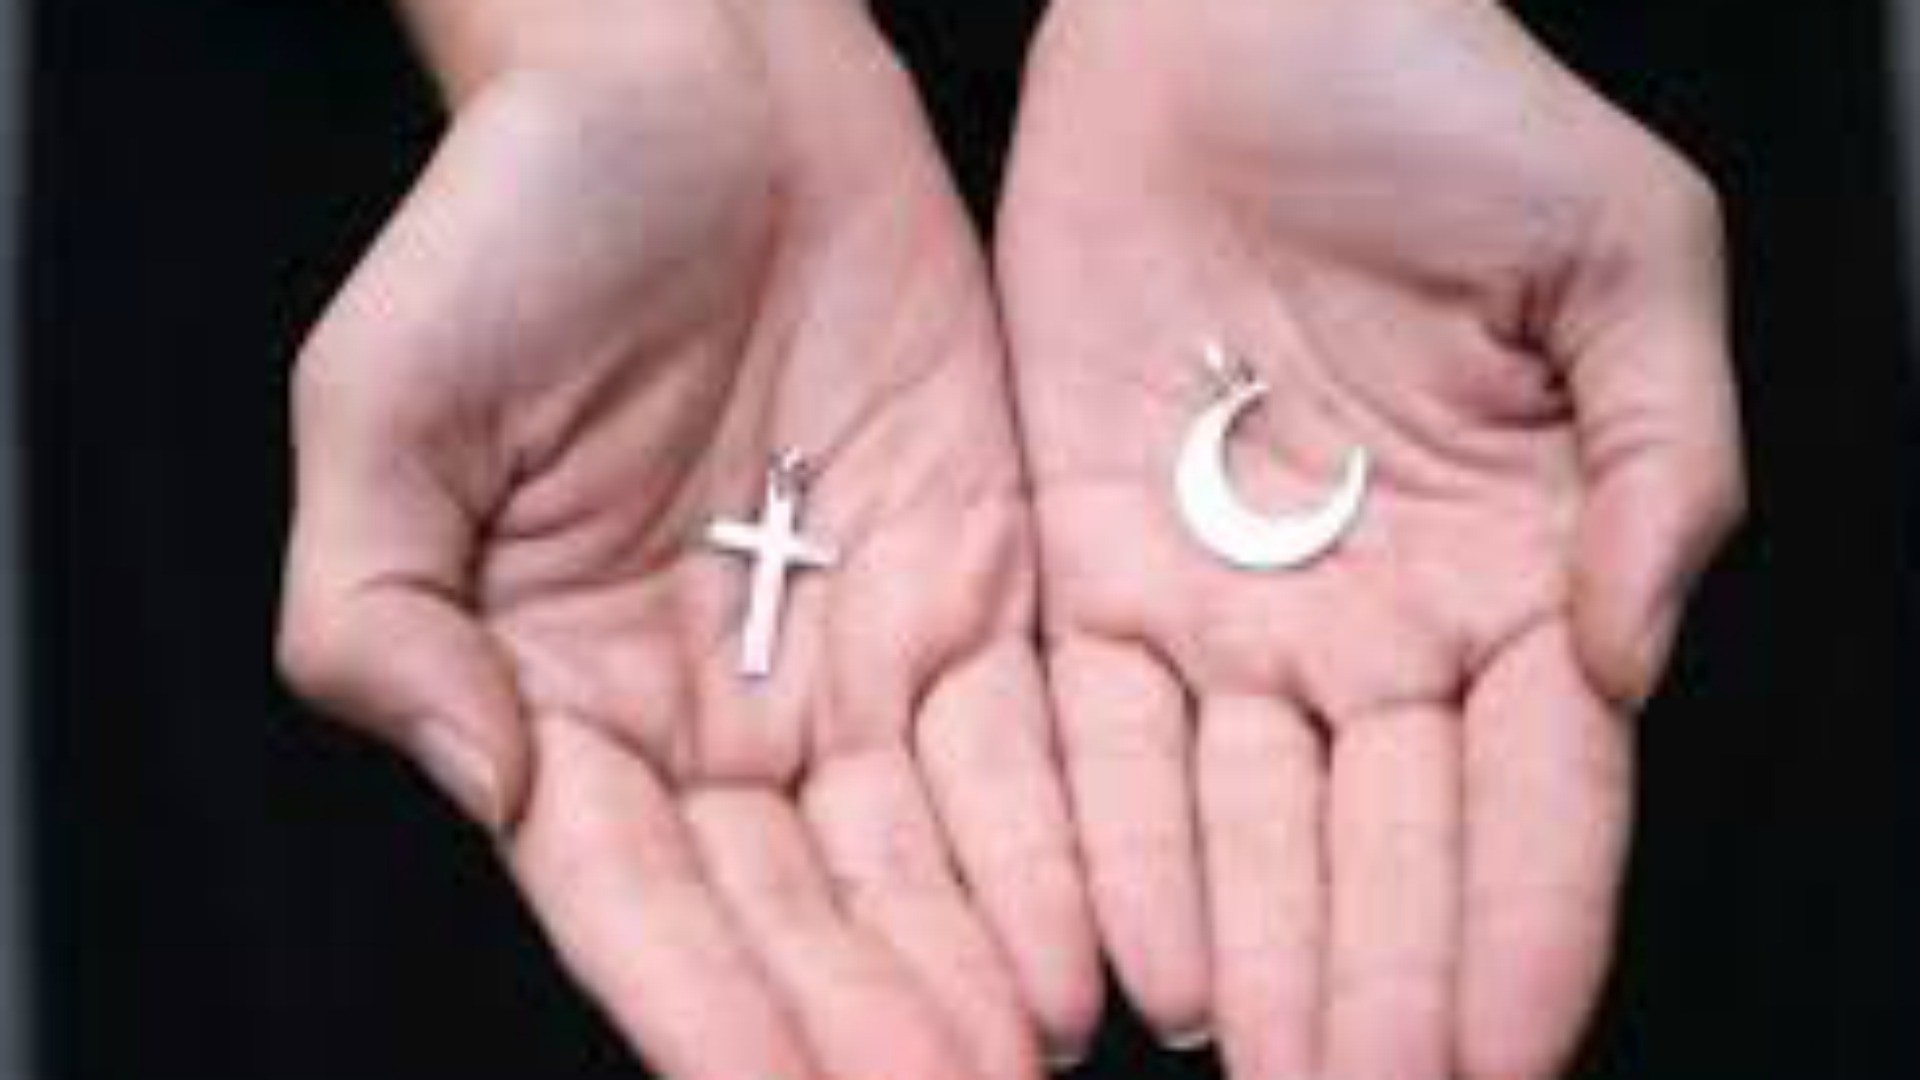 Amitié islamo-chrétienne (Photo: www.yawatani.com)